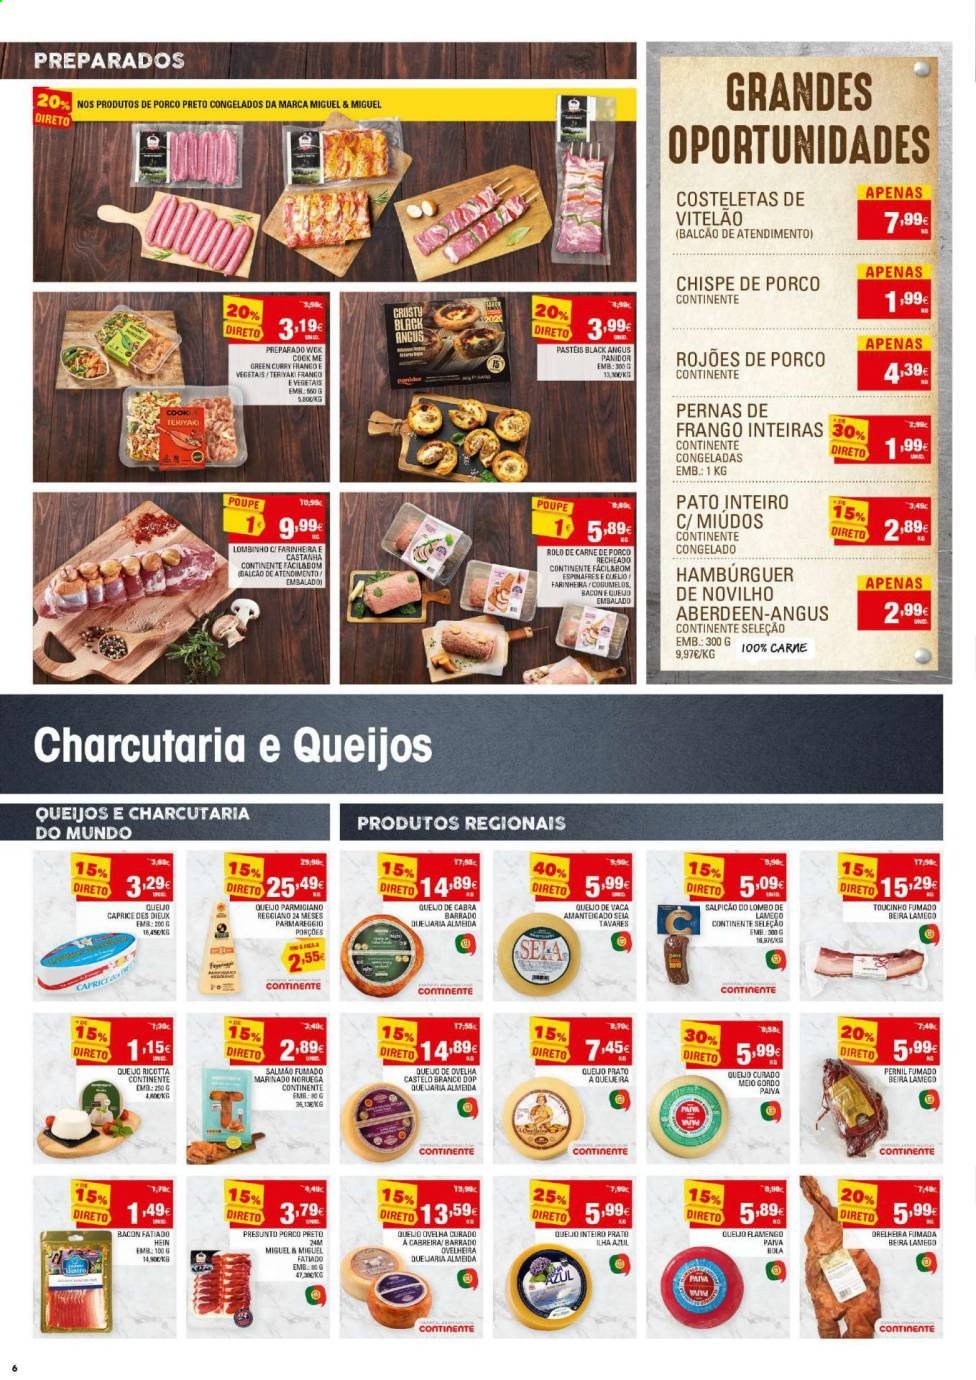 thumbnail - Folheto Continente - 6.4.2021 - 12.4.2021 - Produtos em promoção - lombo, pernil, rolo de carne, pato inteiro, pato, hamburger, salmão, presunto, bacon, queijo, ricotta, curry, wok, prato. Página 6.